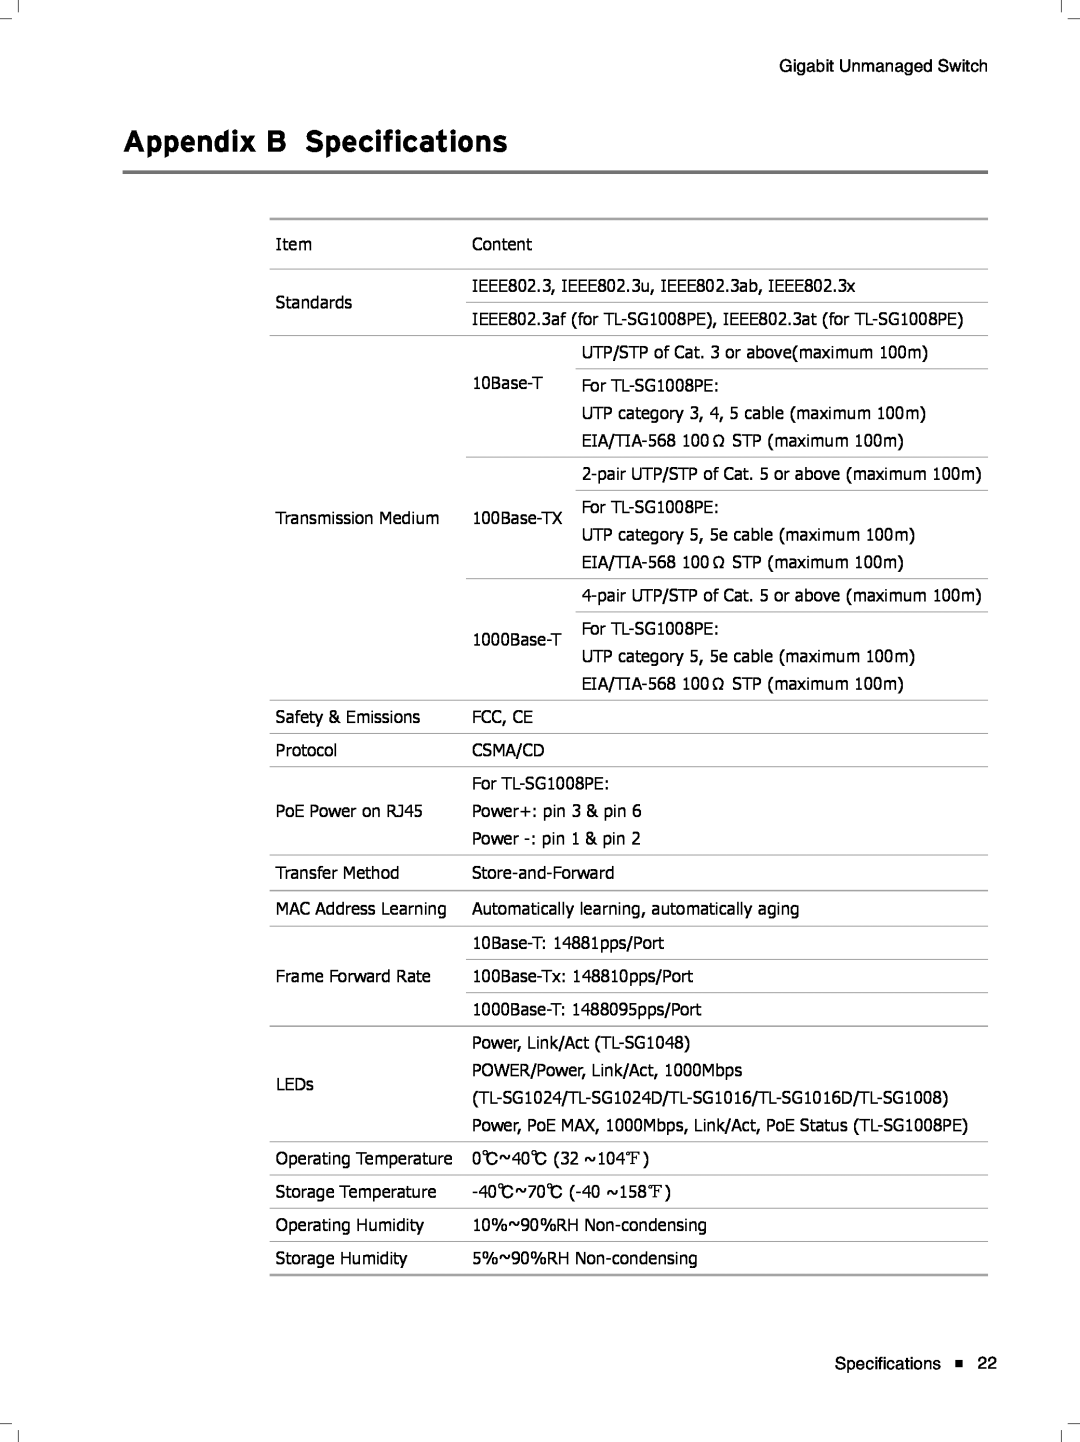 TP-Link tl-sg1048 manual Appendix B Specifications 